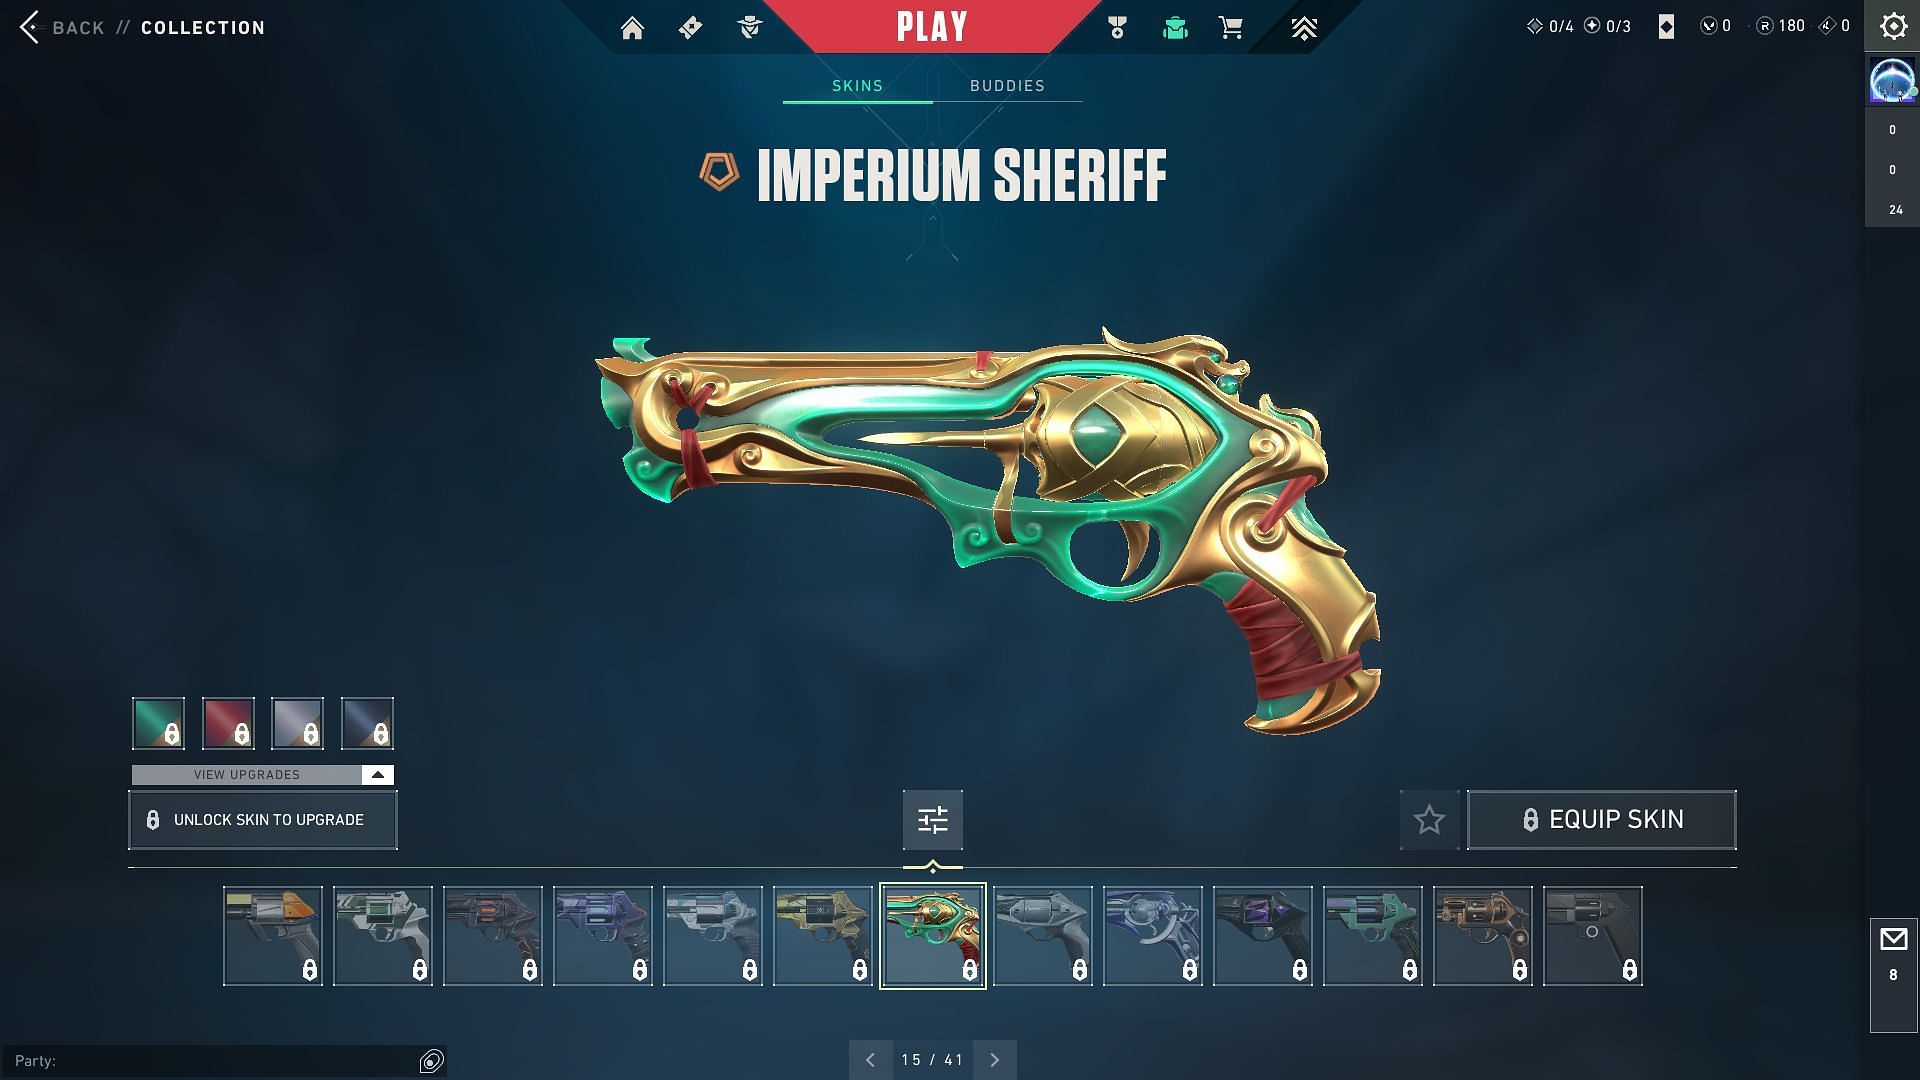 Imperium Sheriff (Image via RIOT Games)